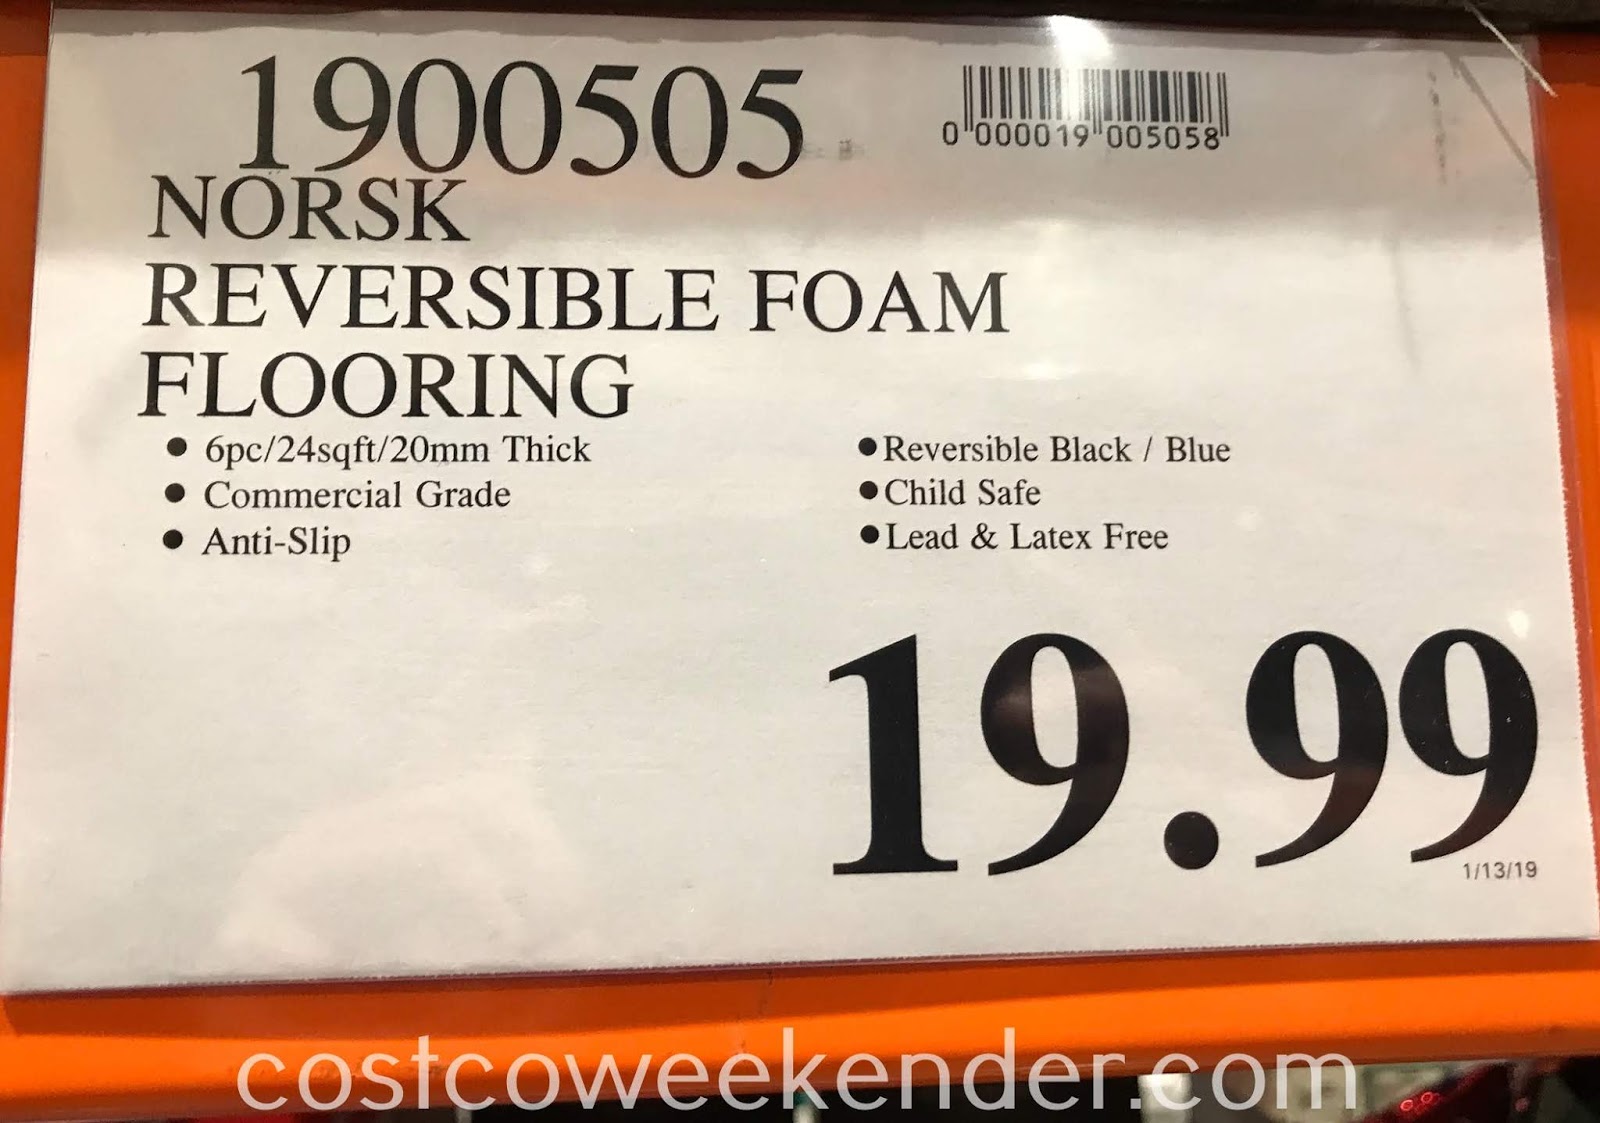 Norsk Reversible Multi Purpose Foam Flooring Costco Weekender